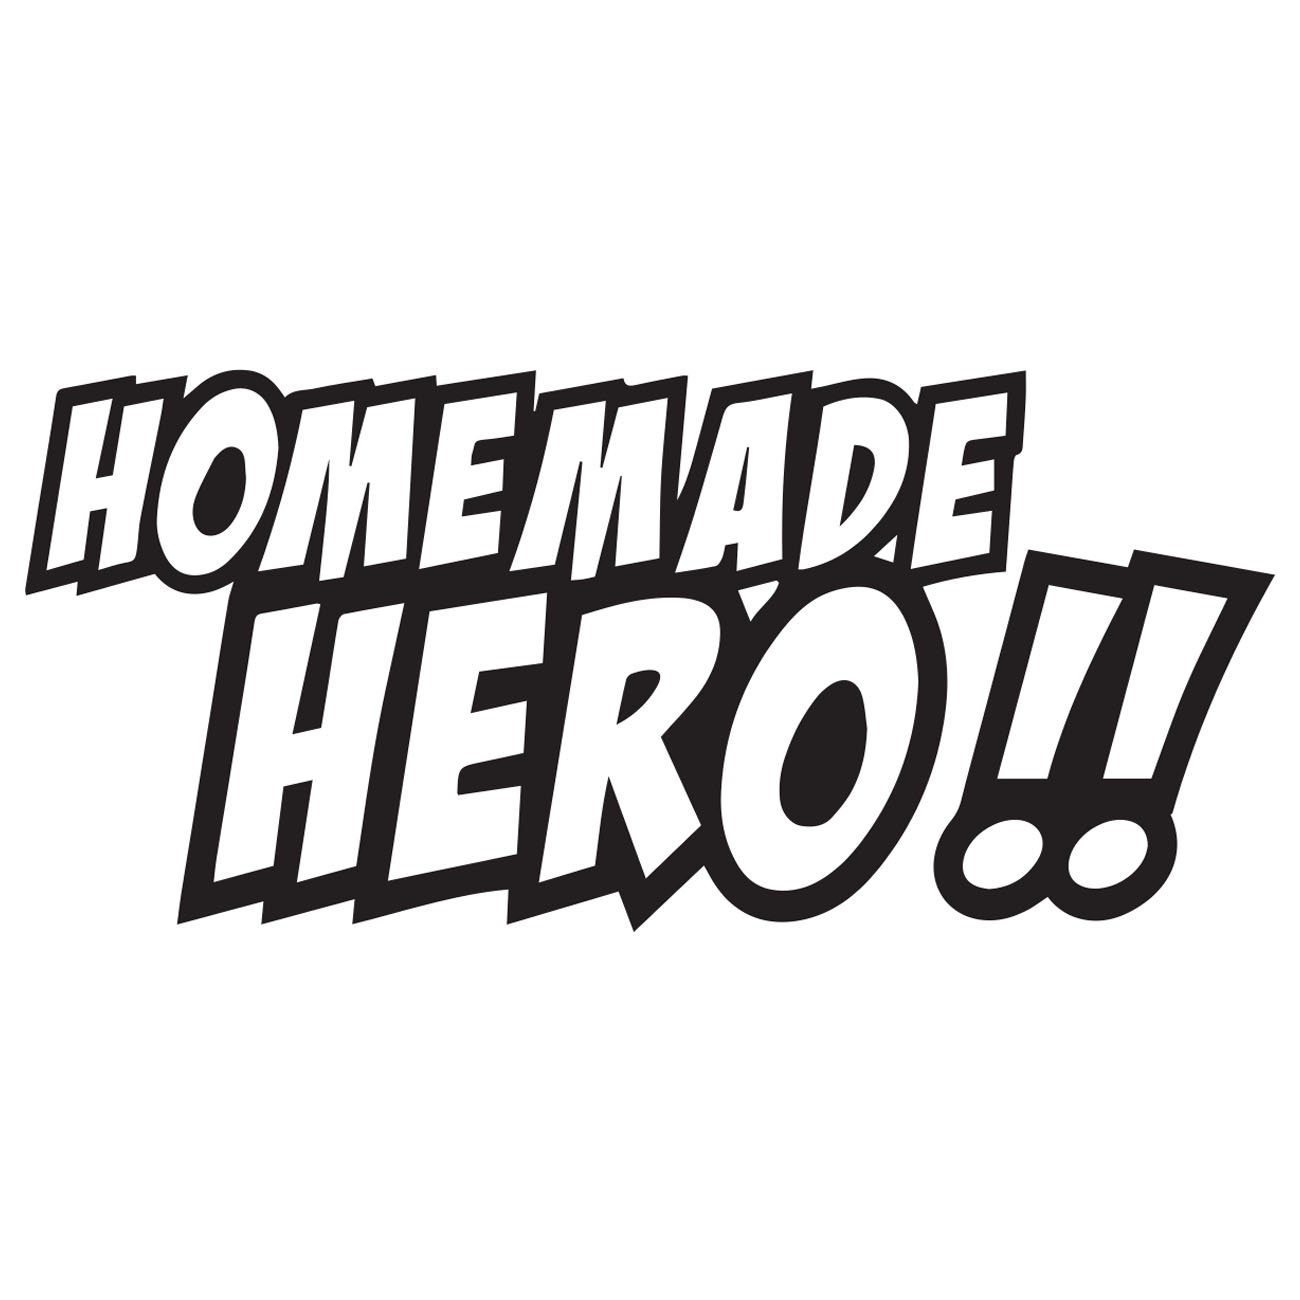 Home made hero